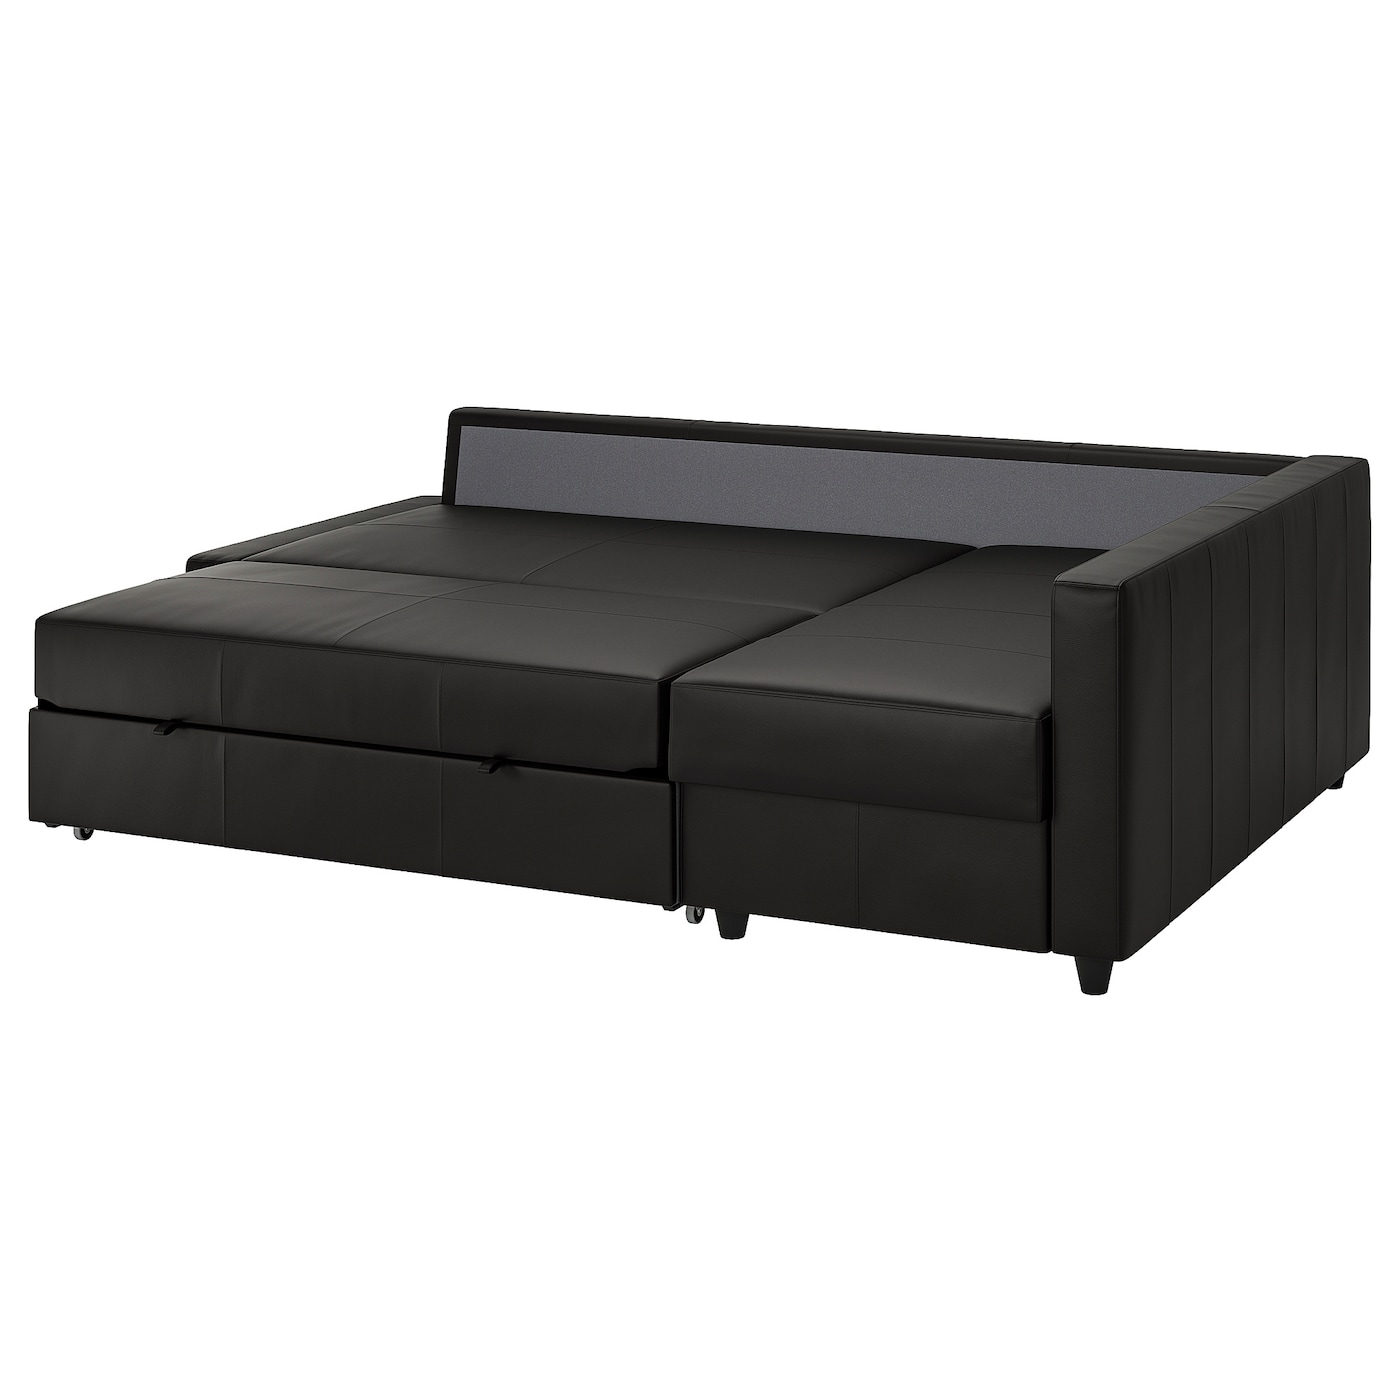 ФРИХЕТЕН Угловой диван-кровать + место для хранения, Бомстад черный FRIHETEN IKEA диван кровать малютка черный